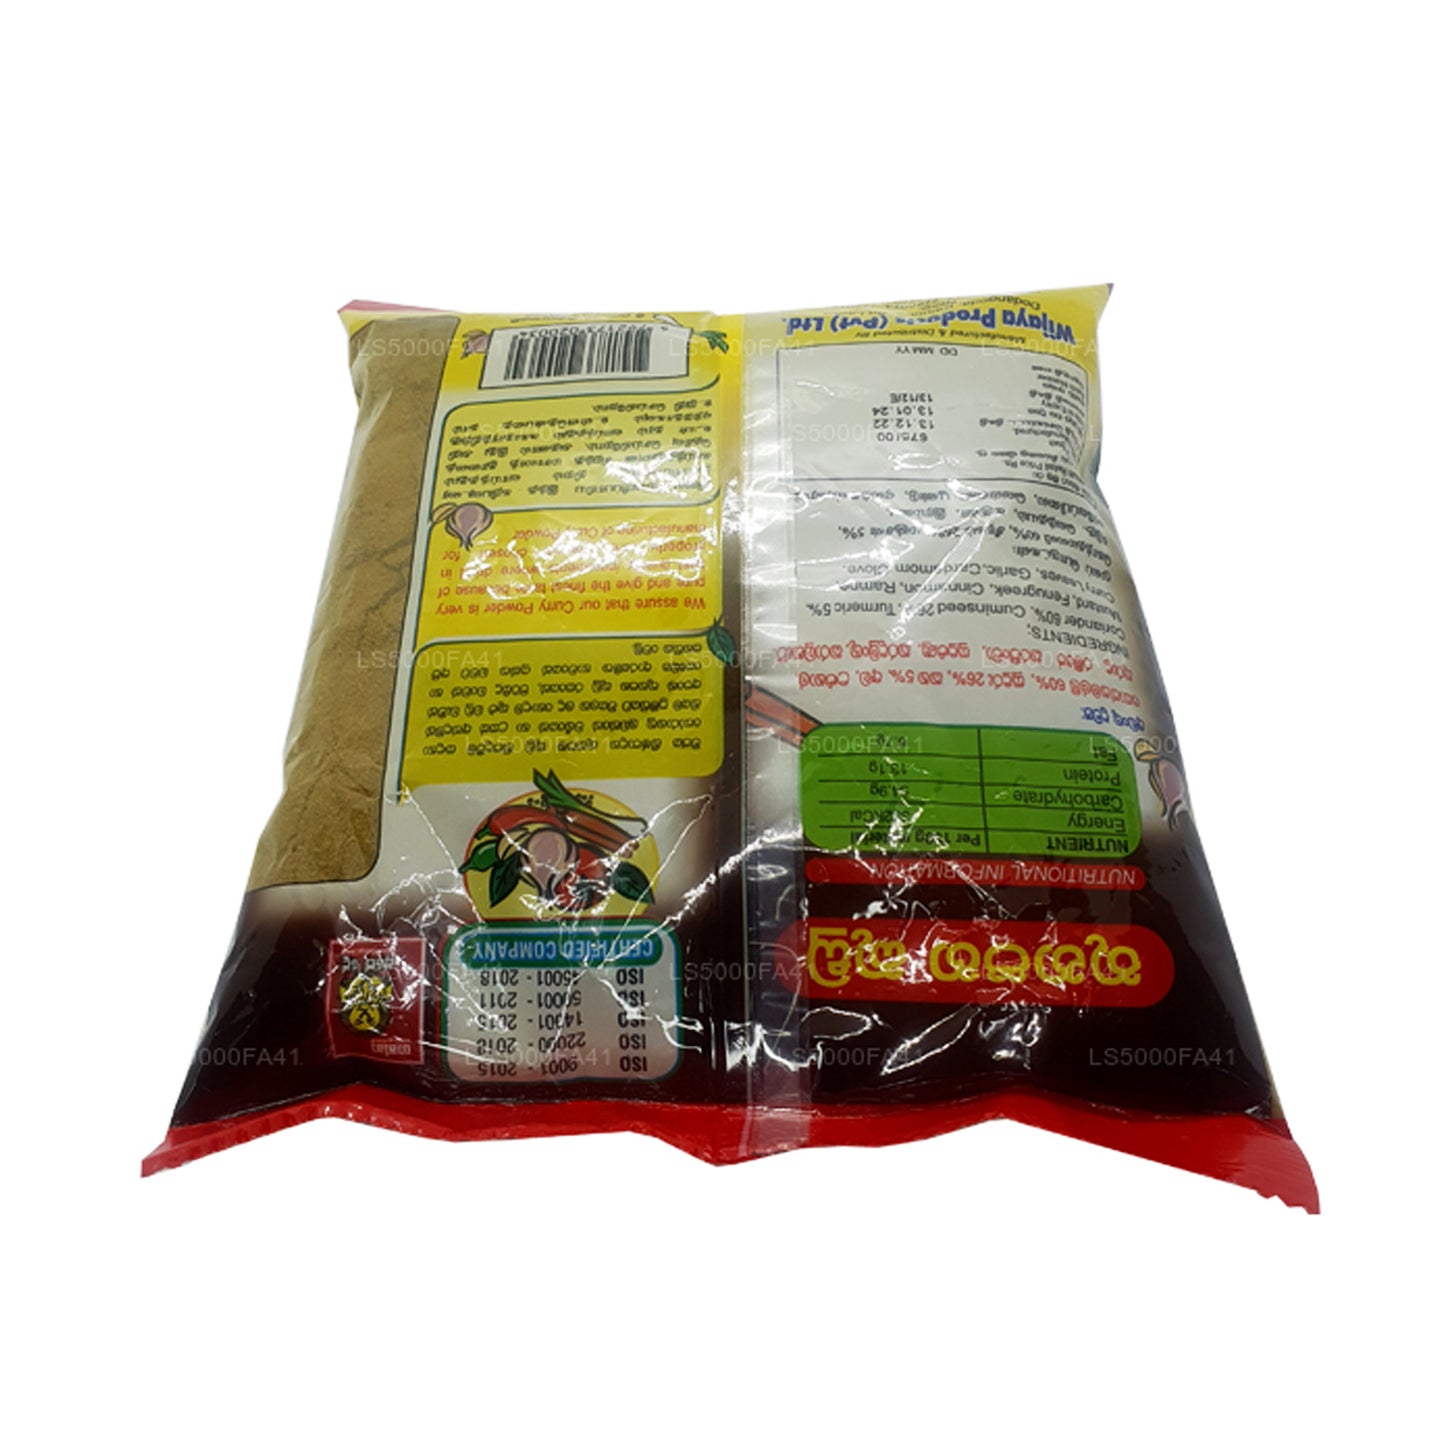 Wijaya Meat Curry Powder (250g)